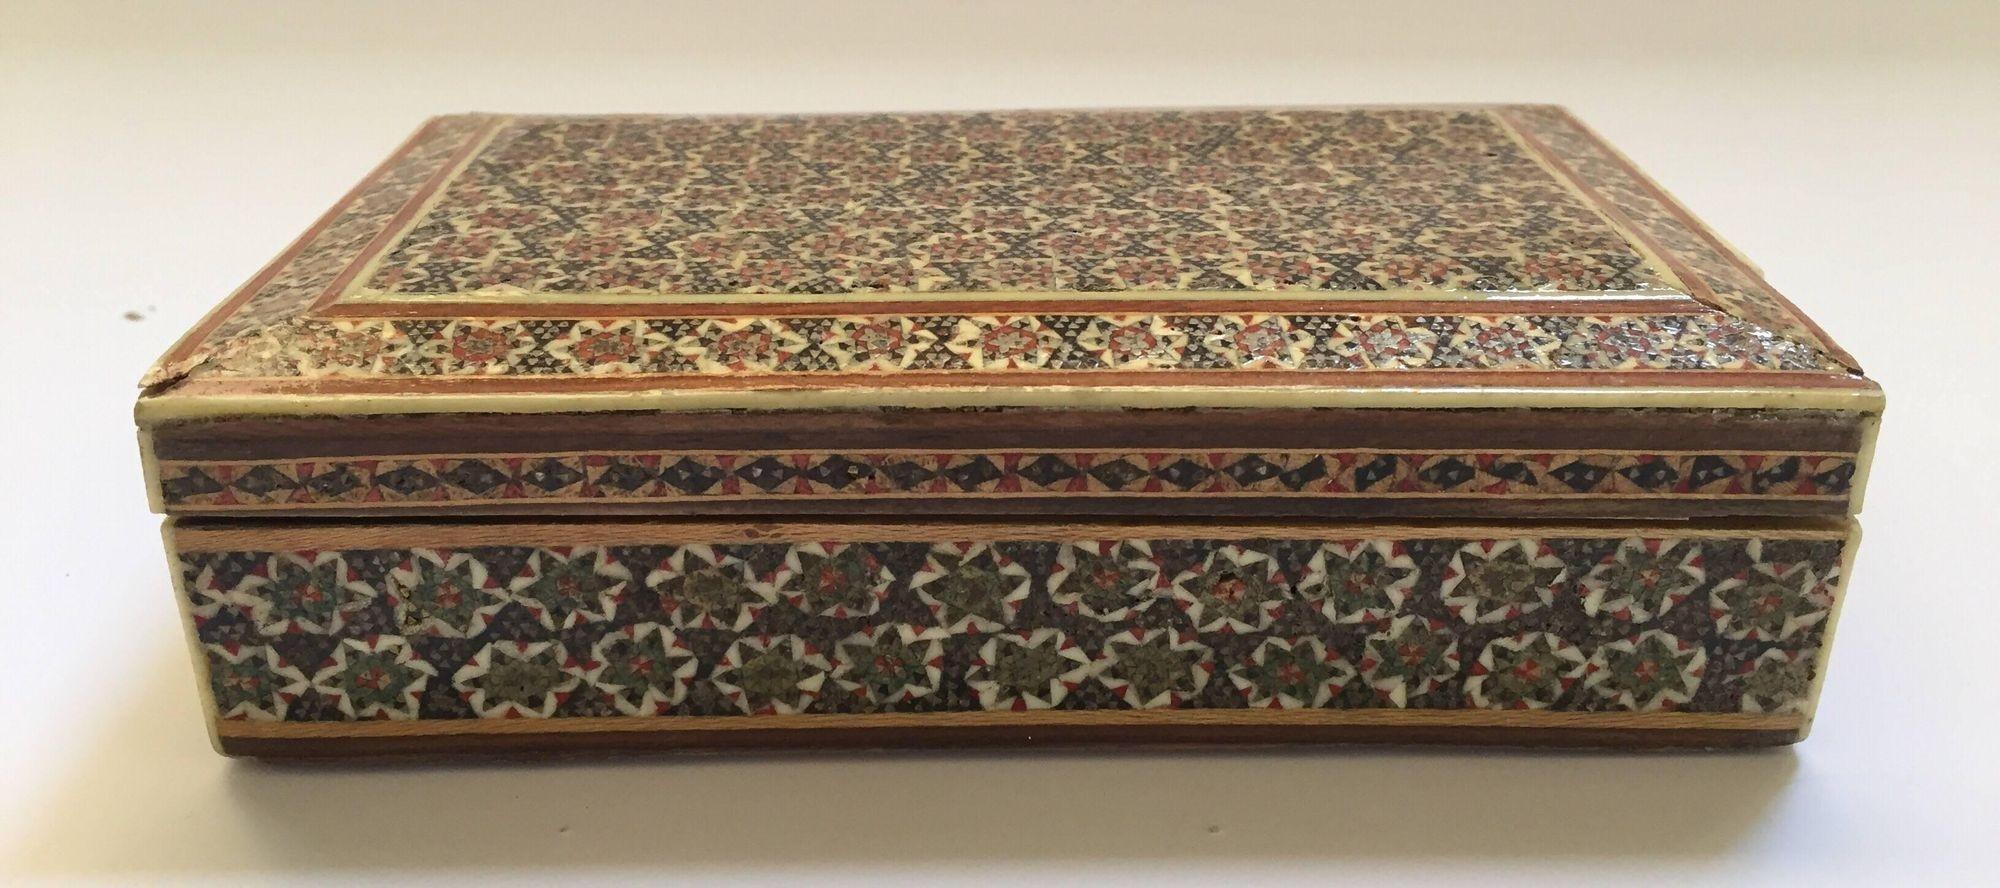 Handgefertigte Mikro-Mosaik-Box mit geometrischem Muster.
Diese persischen Intarsienschachteln aus dem Nahen Osten wurden zur Aufbewahrung von Zigaretten oder Spielkarten verwendet.
Ein Stück in Museumsqualität, wie es im Doris Duke Museum für